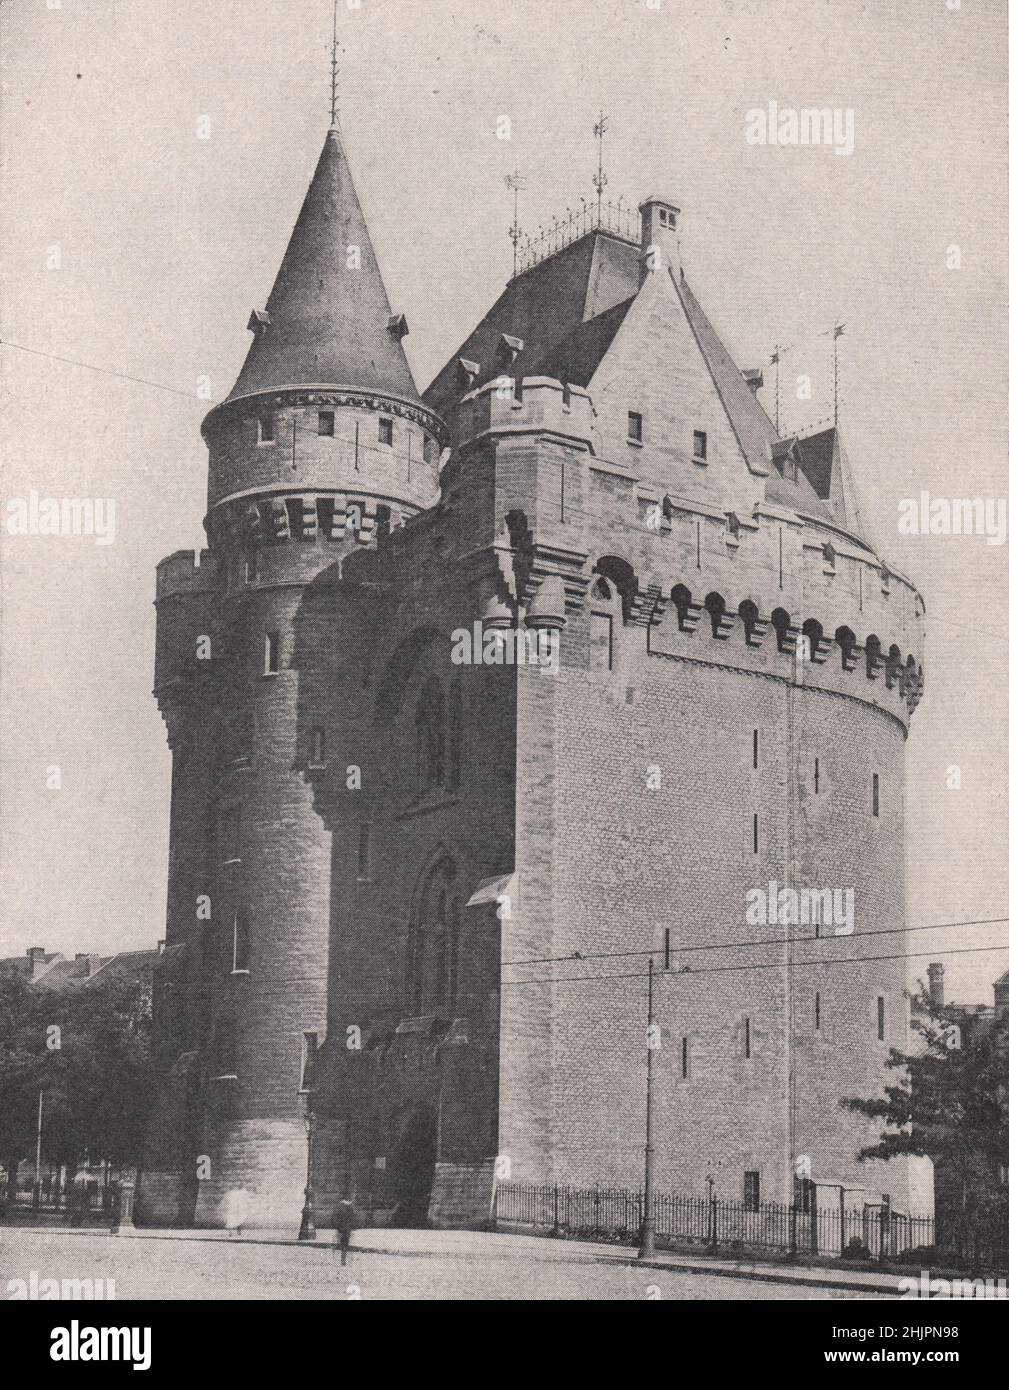 Porte de hal, último remanente de las murallas de la ciudad. Bélgica. Bruselas (1923) Foto de stock